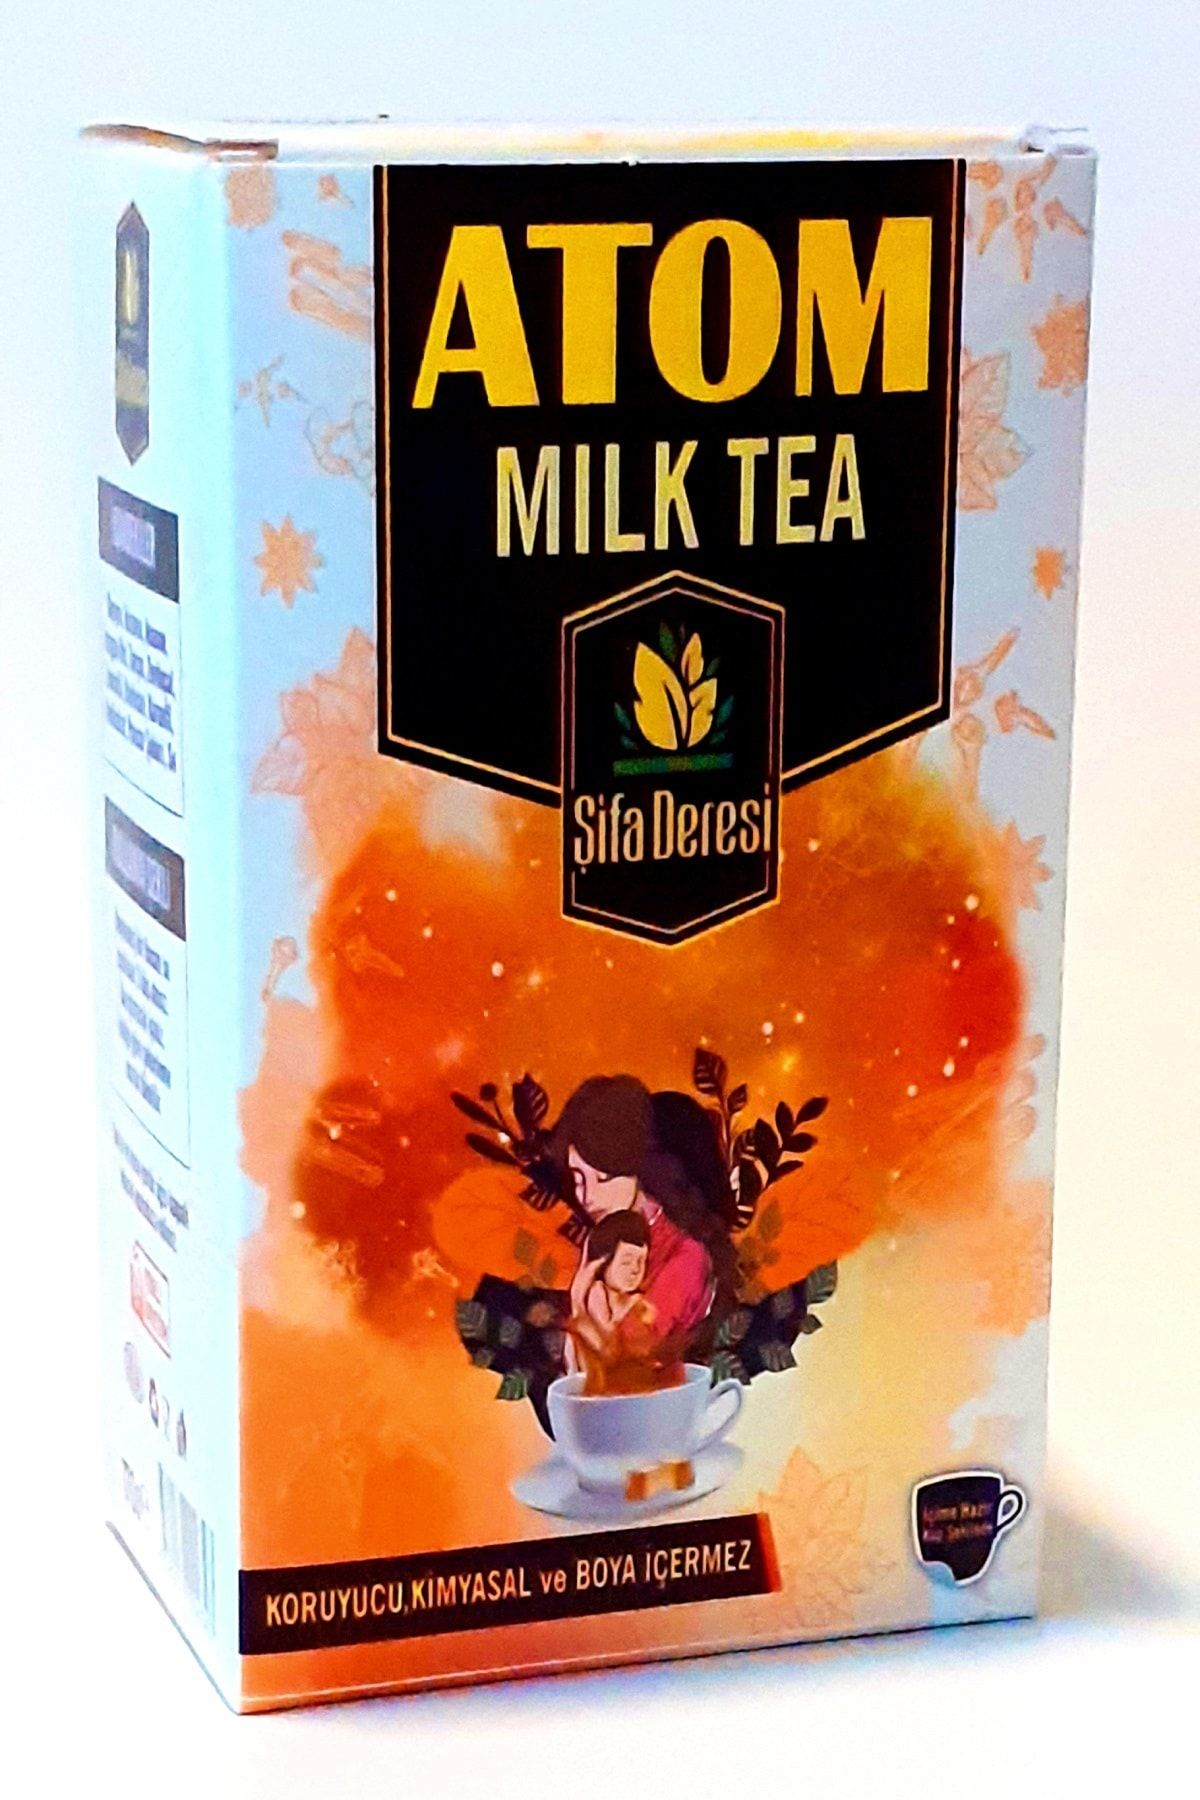 GLŞ ŞİFAHANEM ORGANİK AKTAR Atom Çayı Anne Sütü Arttırıcı Milk Tea 1pkt